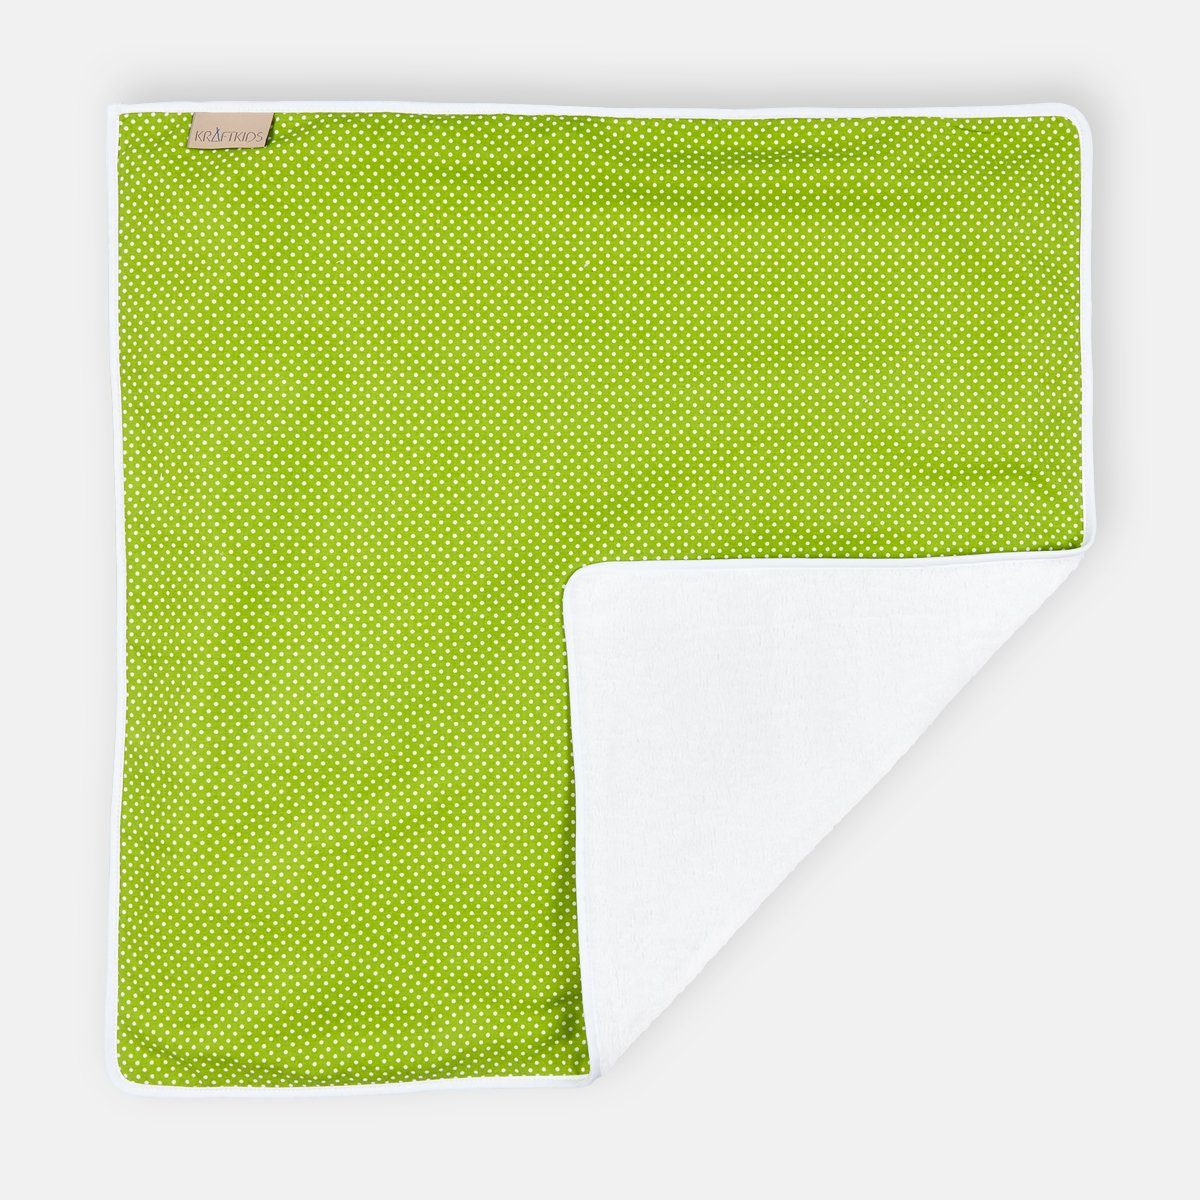 KraftKids Wickelauflage weiße Punkte auf Grün, Wickelunterlage aus 3 Stoffsichten 100% Baumwolle, Innen wasserundurchlässig, faltbar auch für Unterwegs